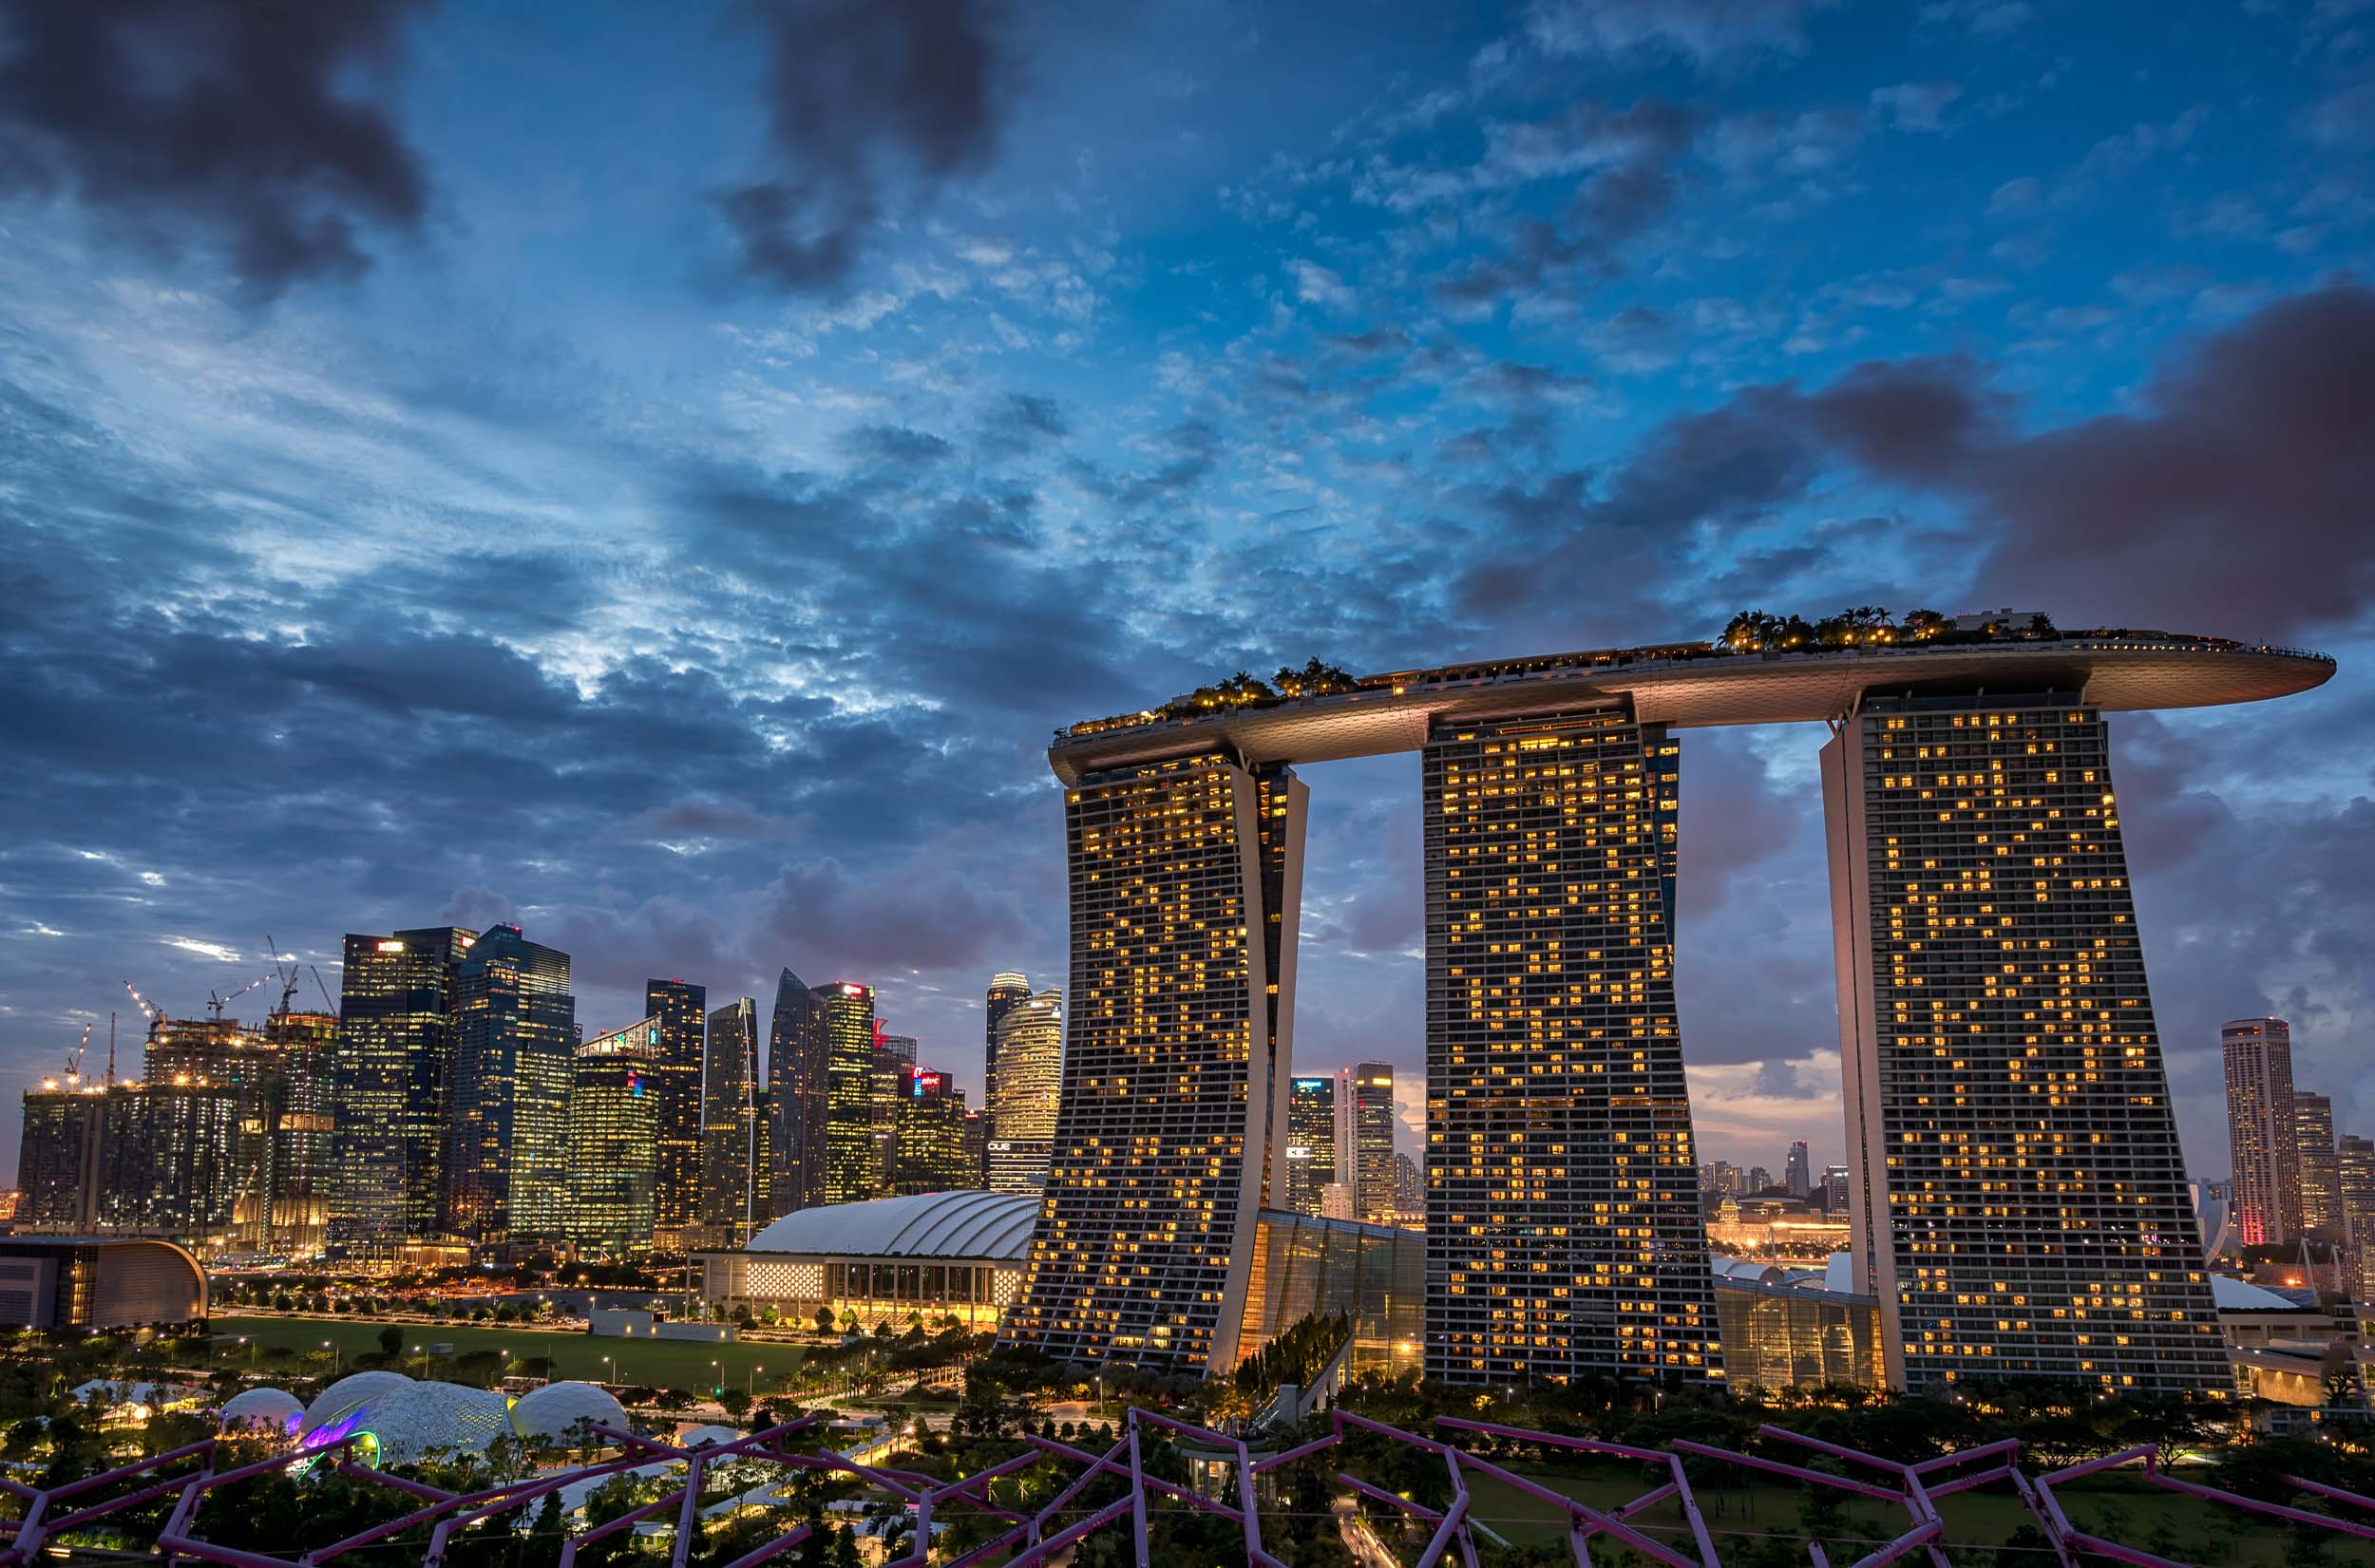 تور ماکائو و سنگاپور شیوار سیاوشان